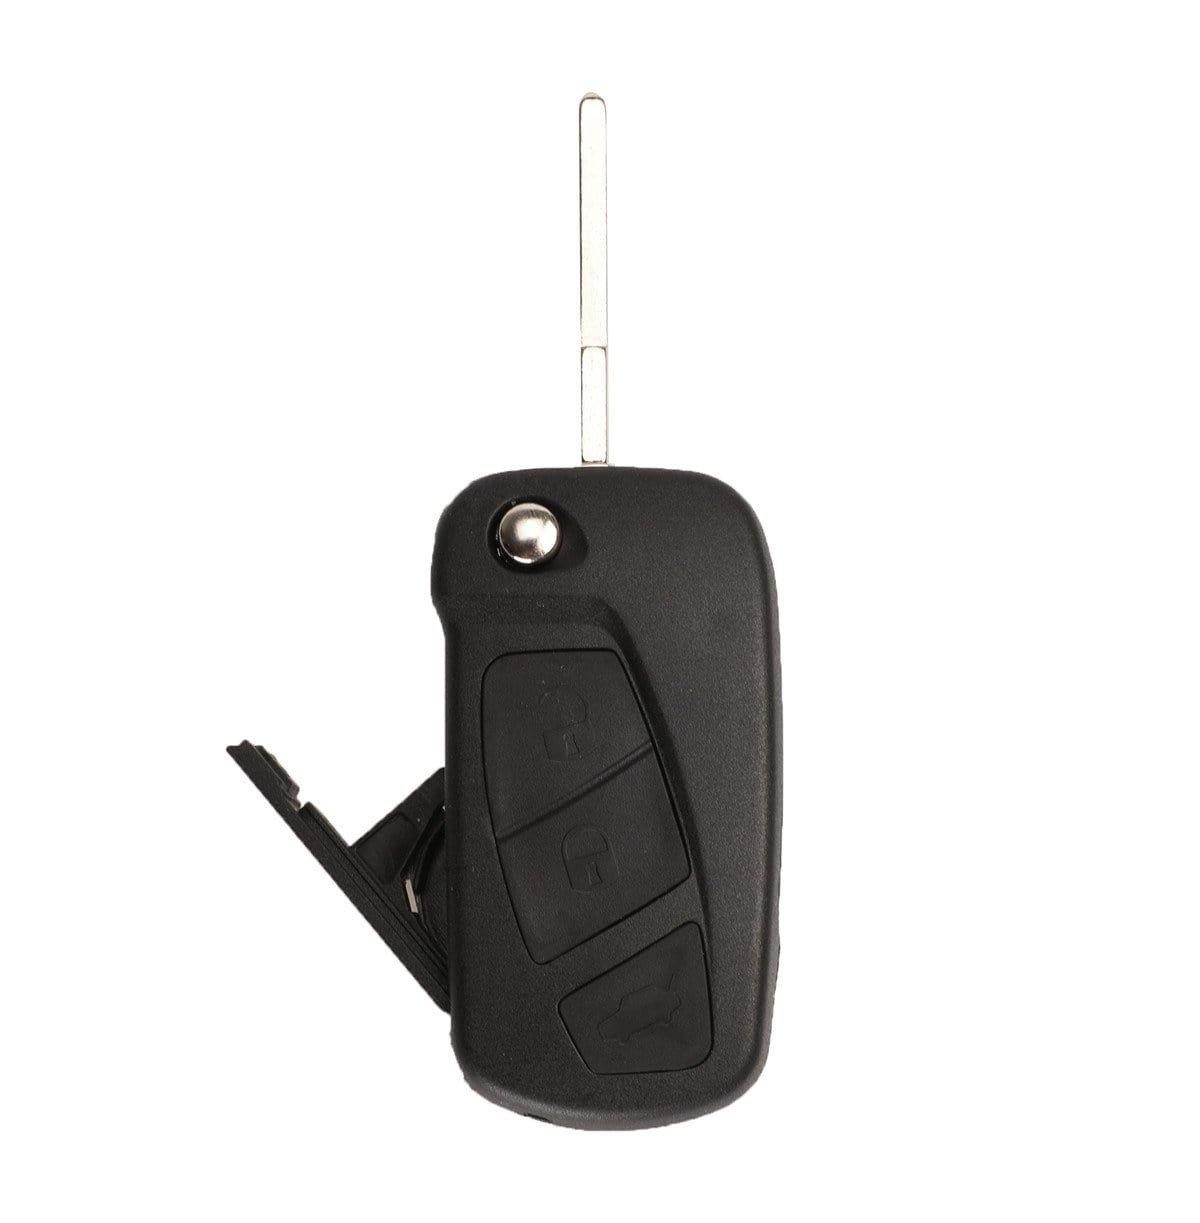 Fekete színű, 2 gombos Citroen kulcsház, bicskakulcs SIP22 kulcsszárral.